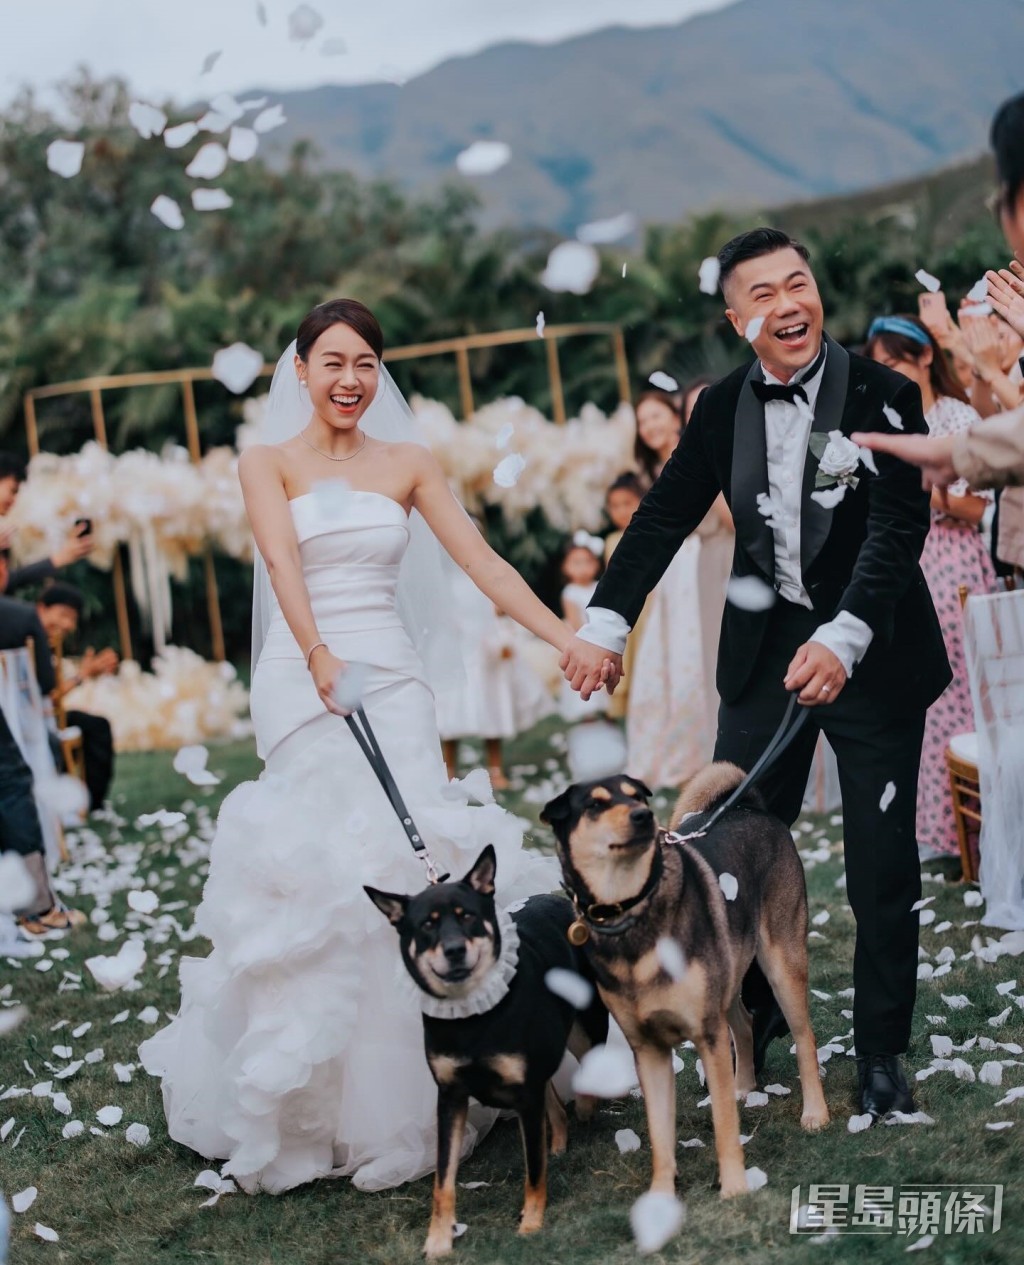 愛犬更現身於婚禮上。